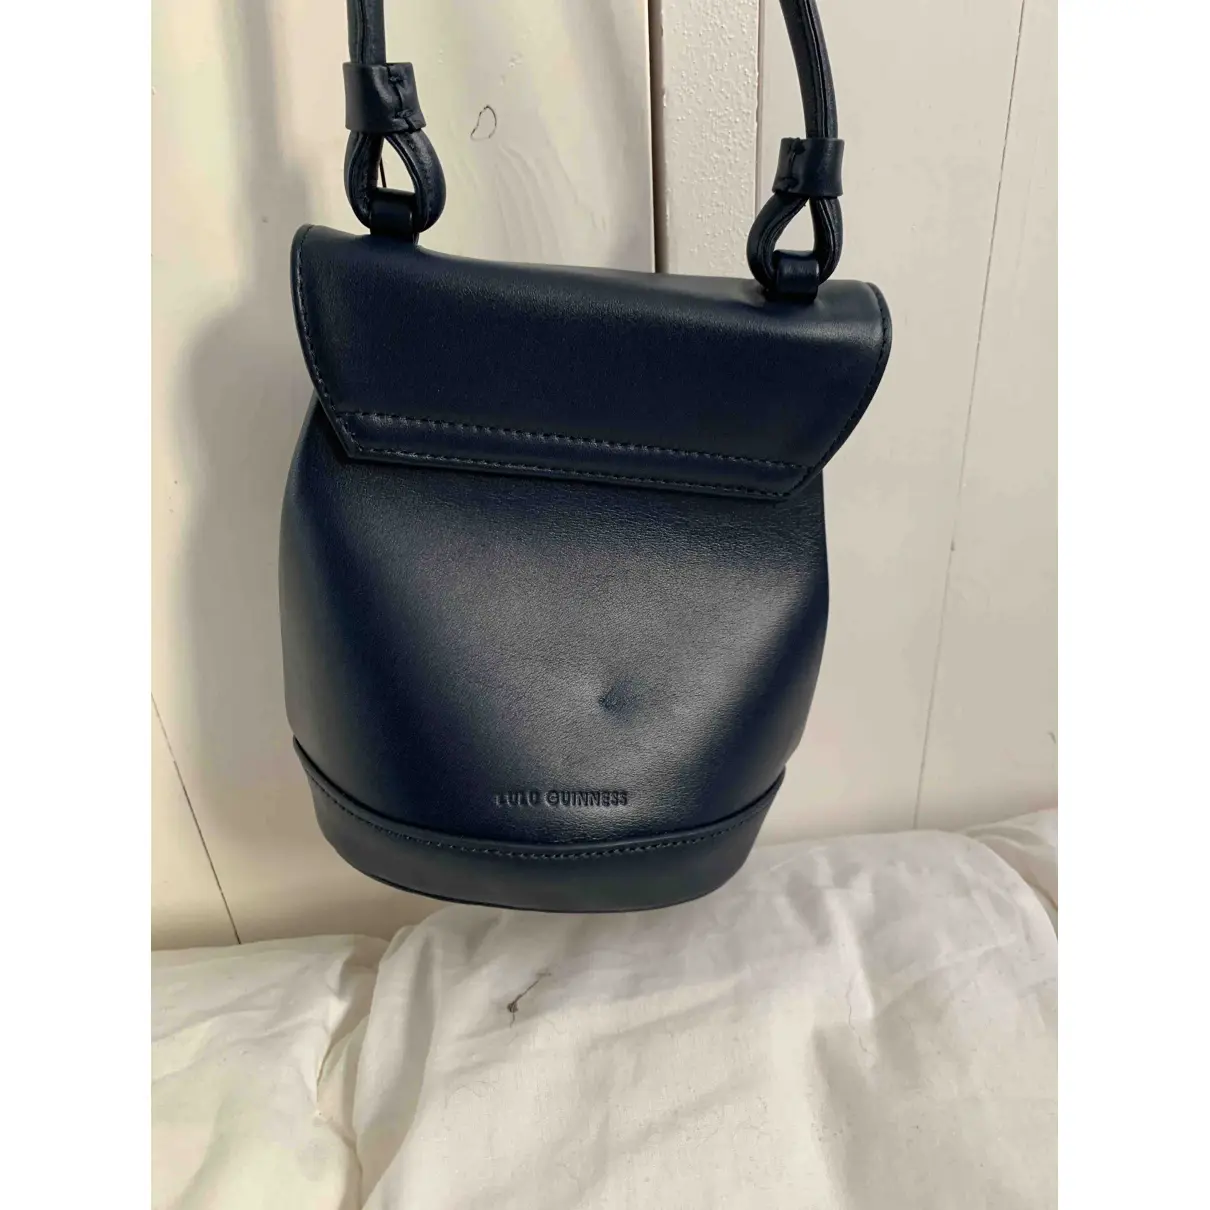 Buy Lulu Guinness Leather handbag online